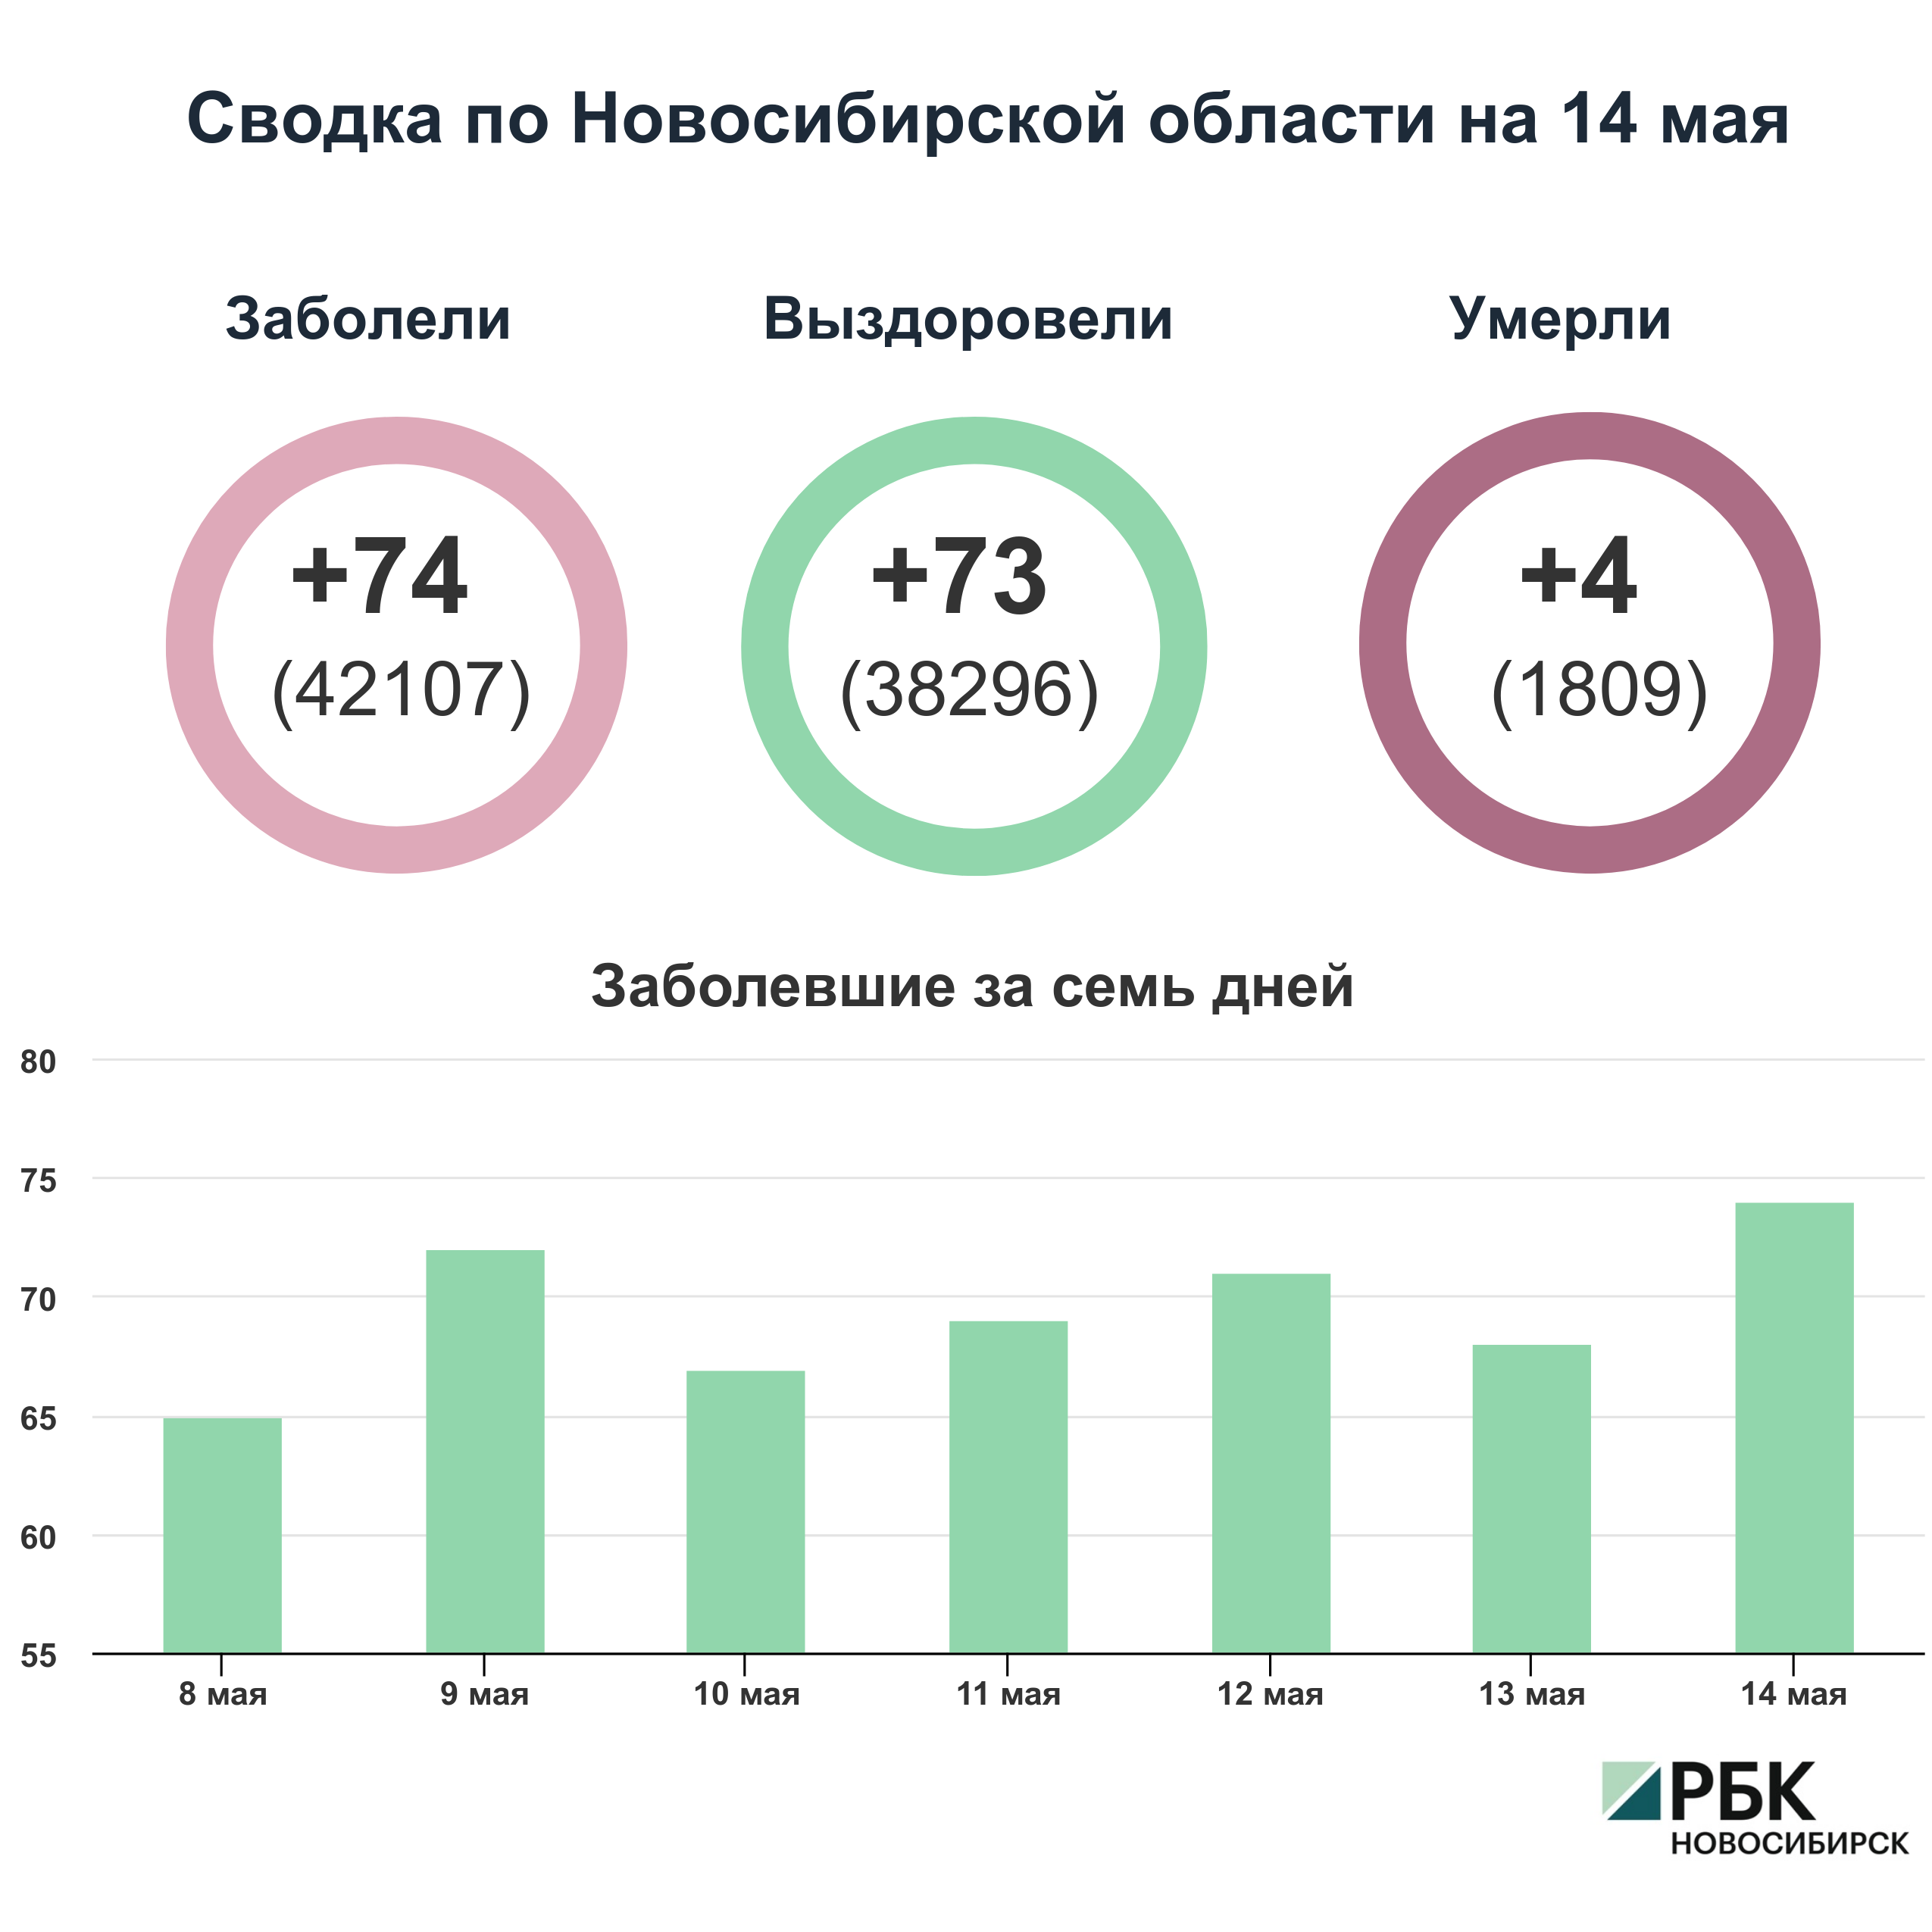 Коронавирус в Новосибирске: сводка на 14 мая